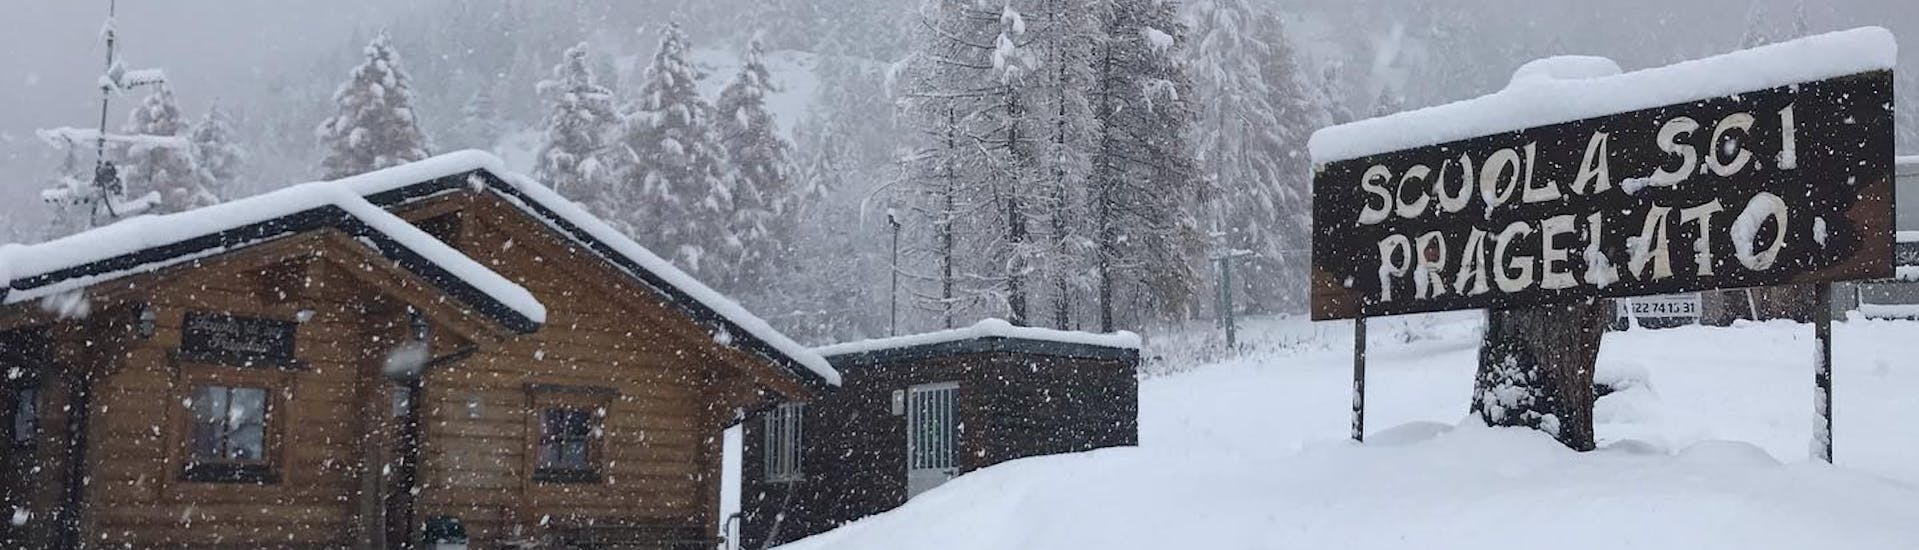 Geweldige foto van de met sneeuw bedekte skischool in Pragelato. Perfecte omgeving voor een van de privé skilessen voor volwassenen voor alle niveaus.